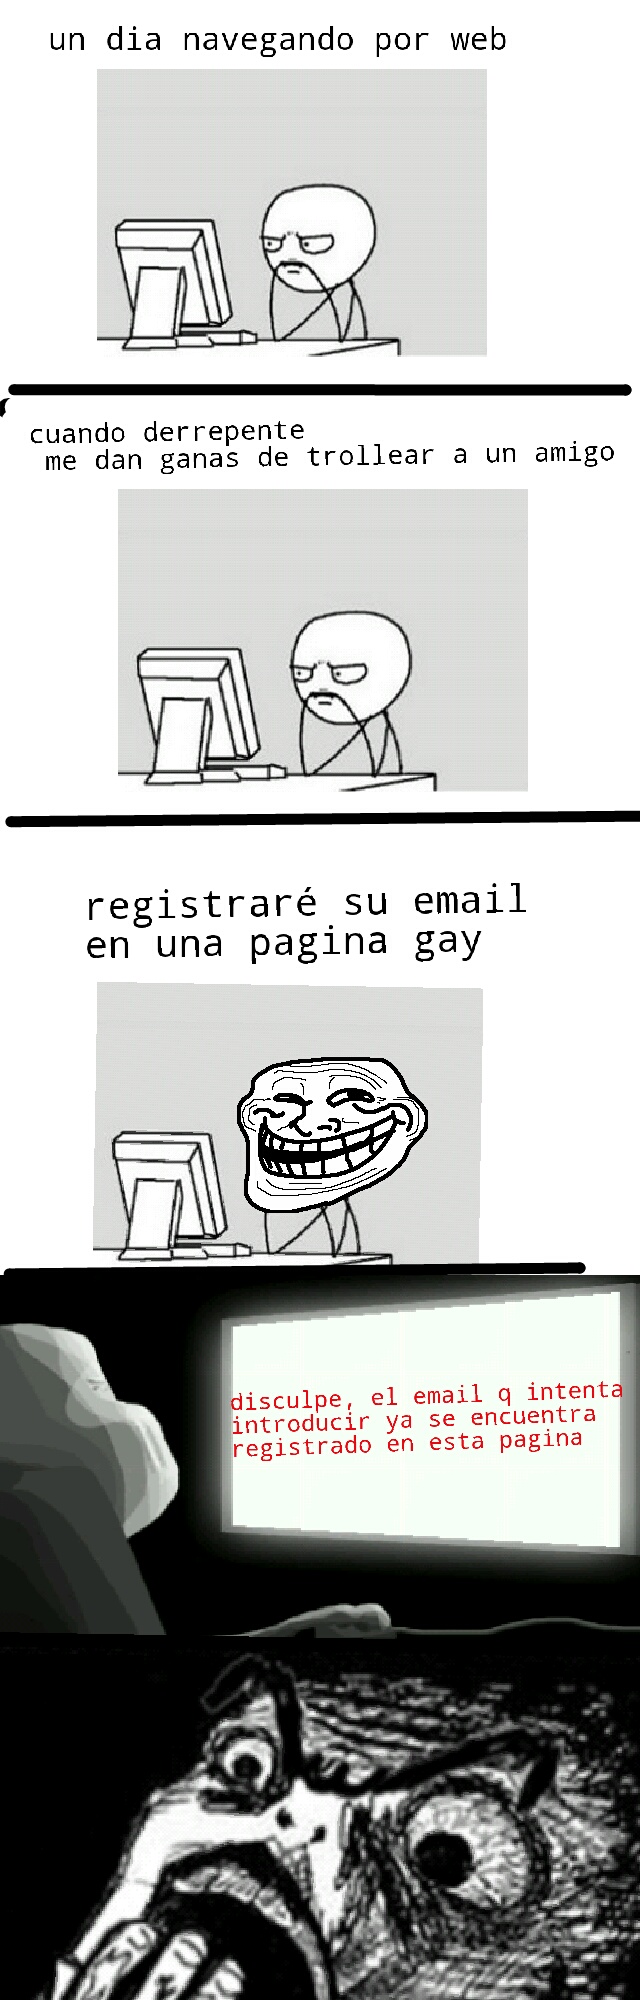 registro gay - meme